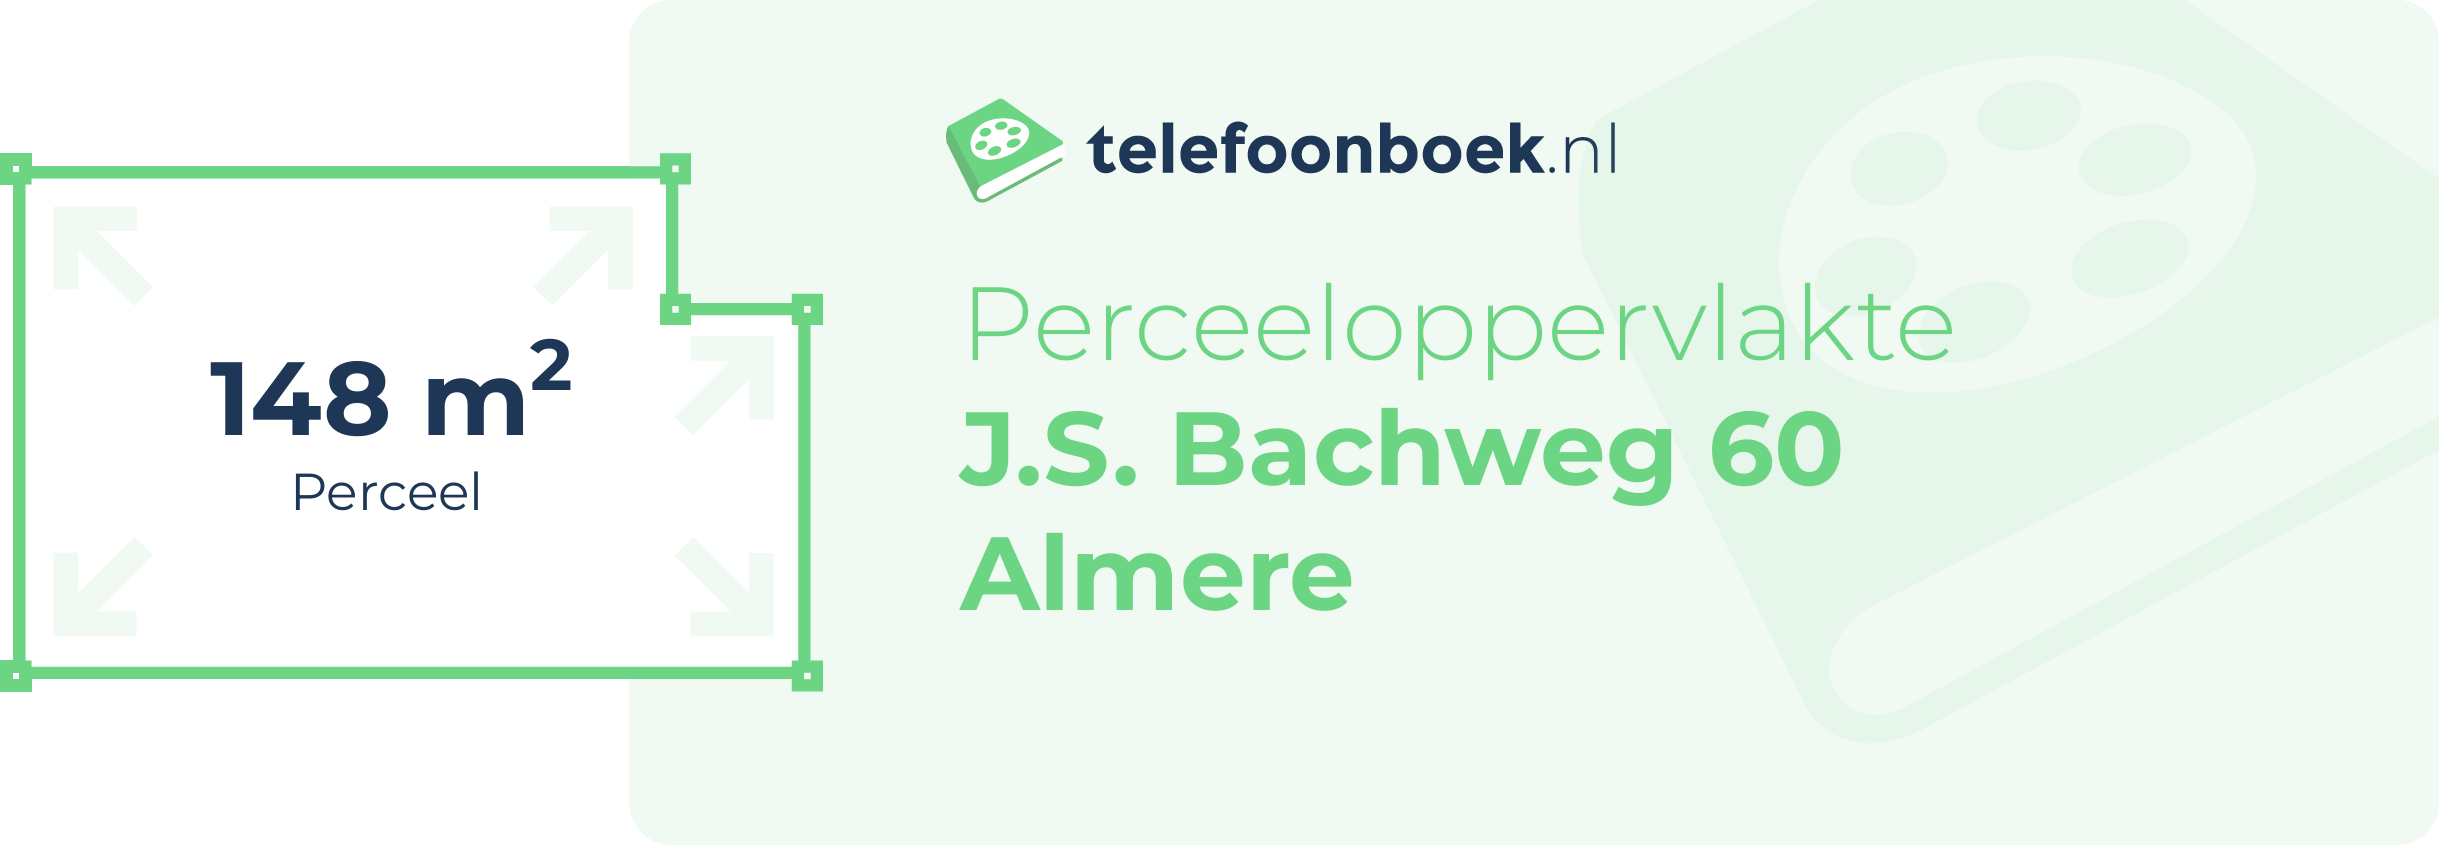 Perceeloppervlakte J.S. Bachweg 60 Almere